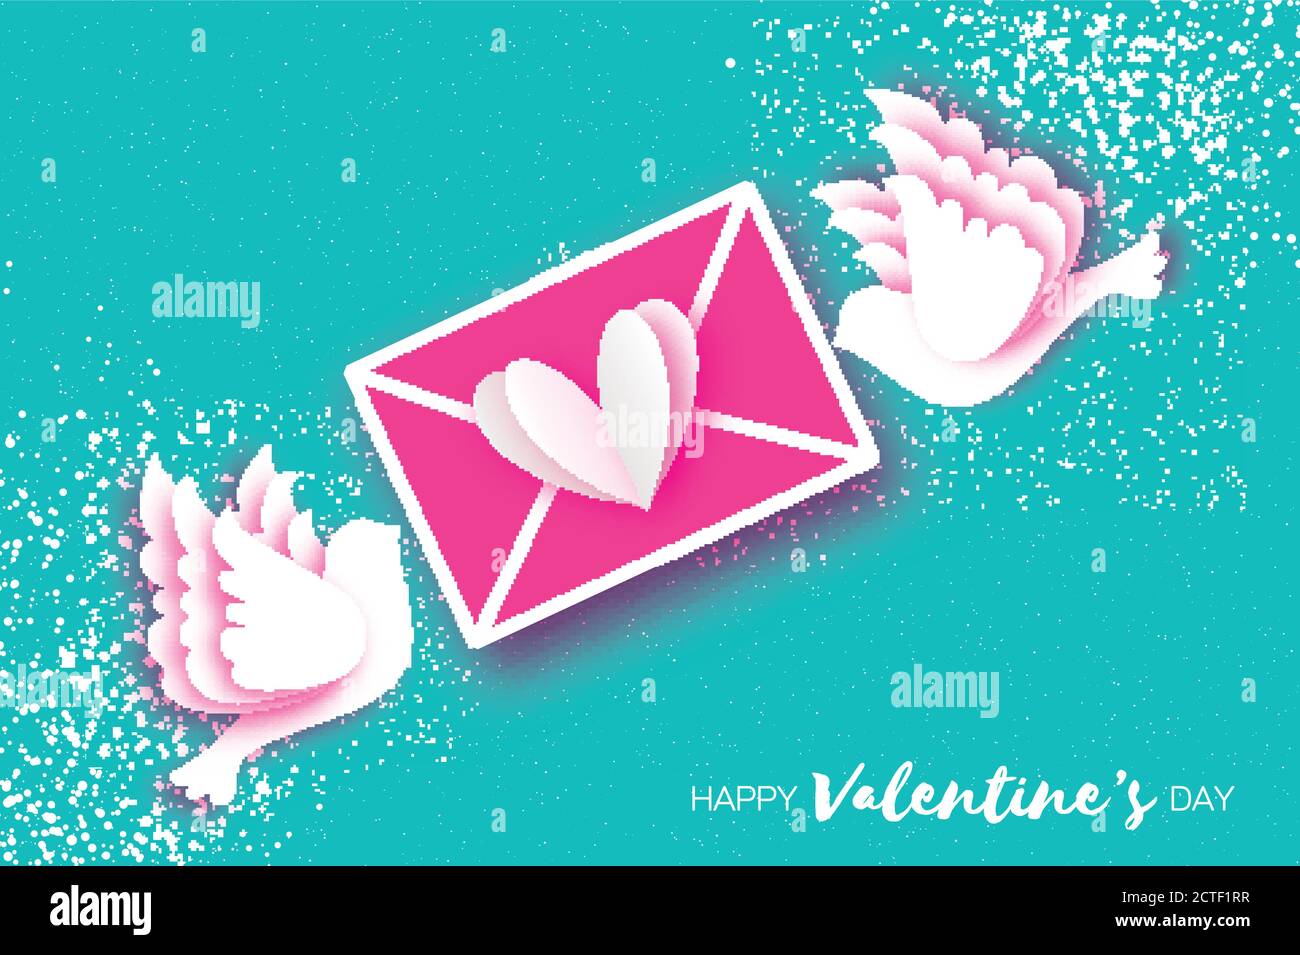 Origami Happy Valentinstag Grußkarte. Flying Love Birds, Mail Love und Umschlag in Papierschnitt-Stil. Romantische weiße Tauben küssen. Sei mein Valen Stock Vektor